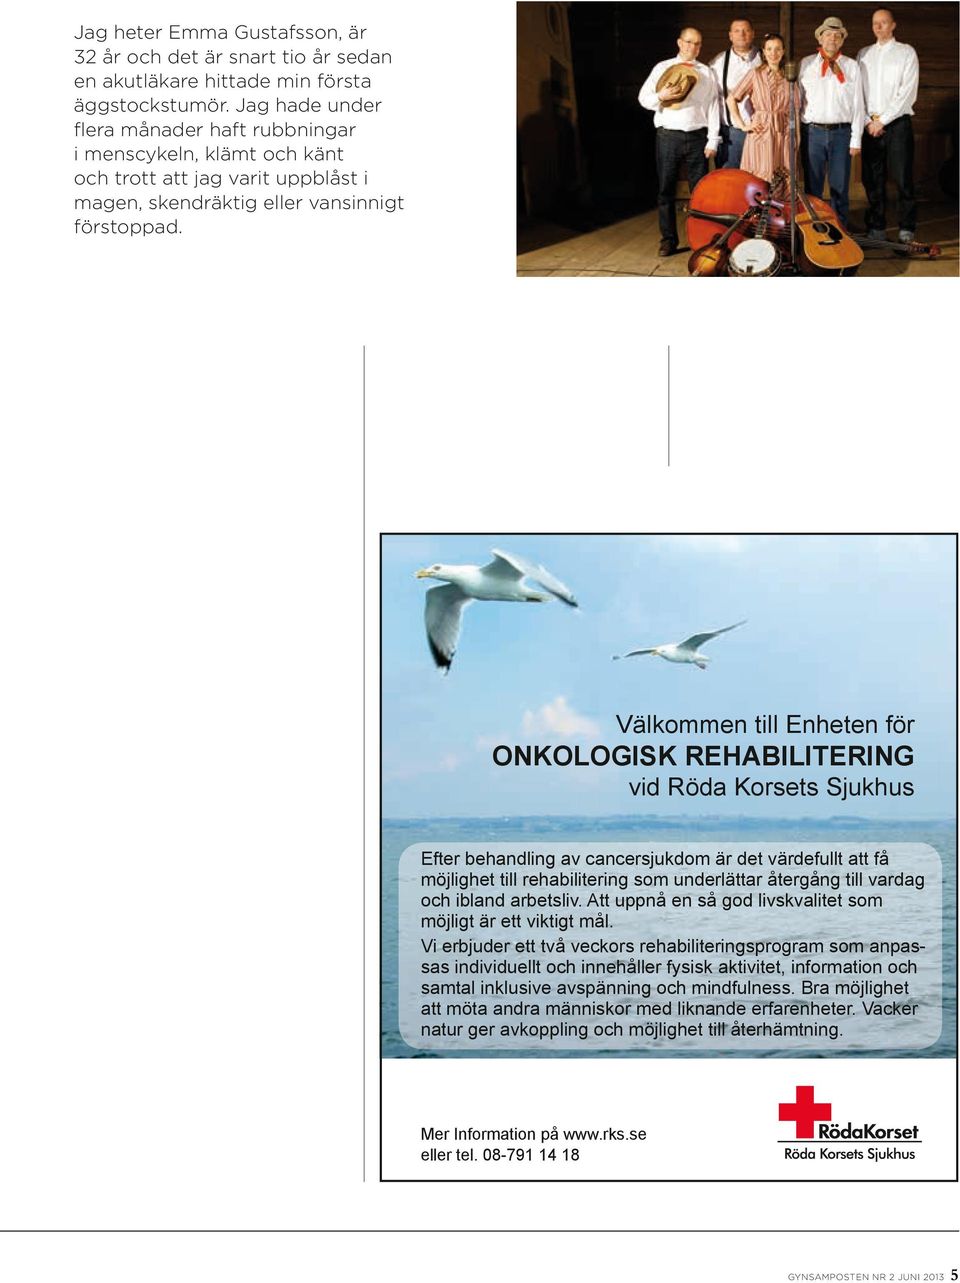 Välkommen till Enheten för ONKOLOGISK REHABILITERING vid Röda Korsets Sjukhus Välkommen till Enheten för onkologisk rehabilitering vid Röda Korsets Sjukhus Efter behandling av cancersjukdom är det